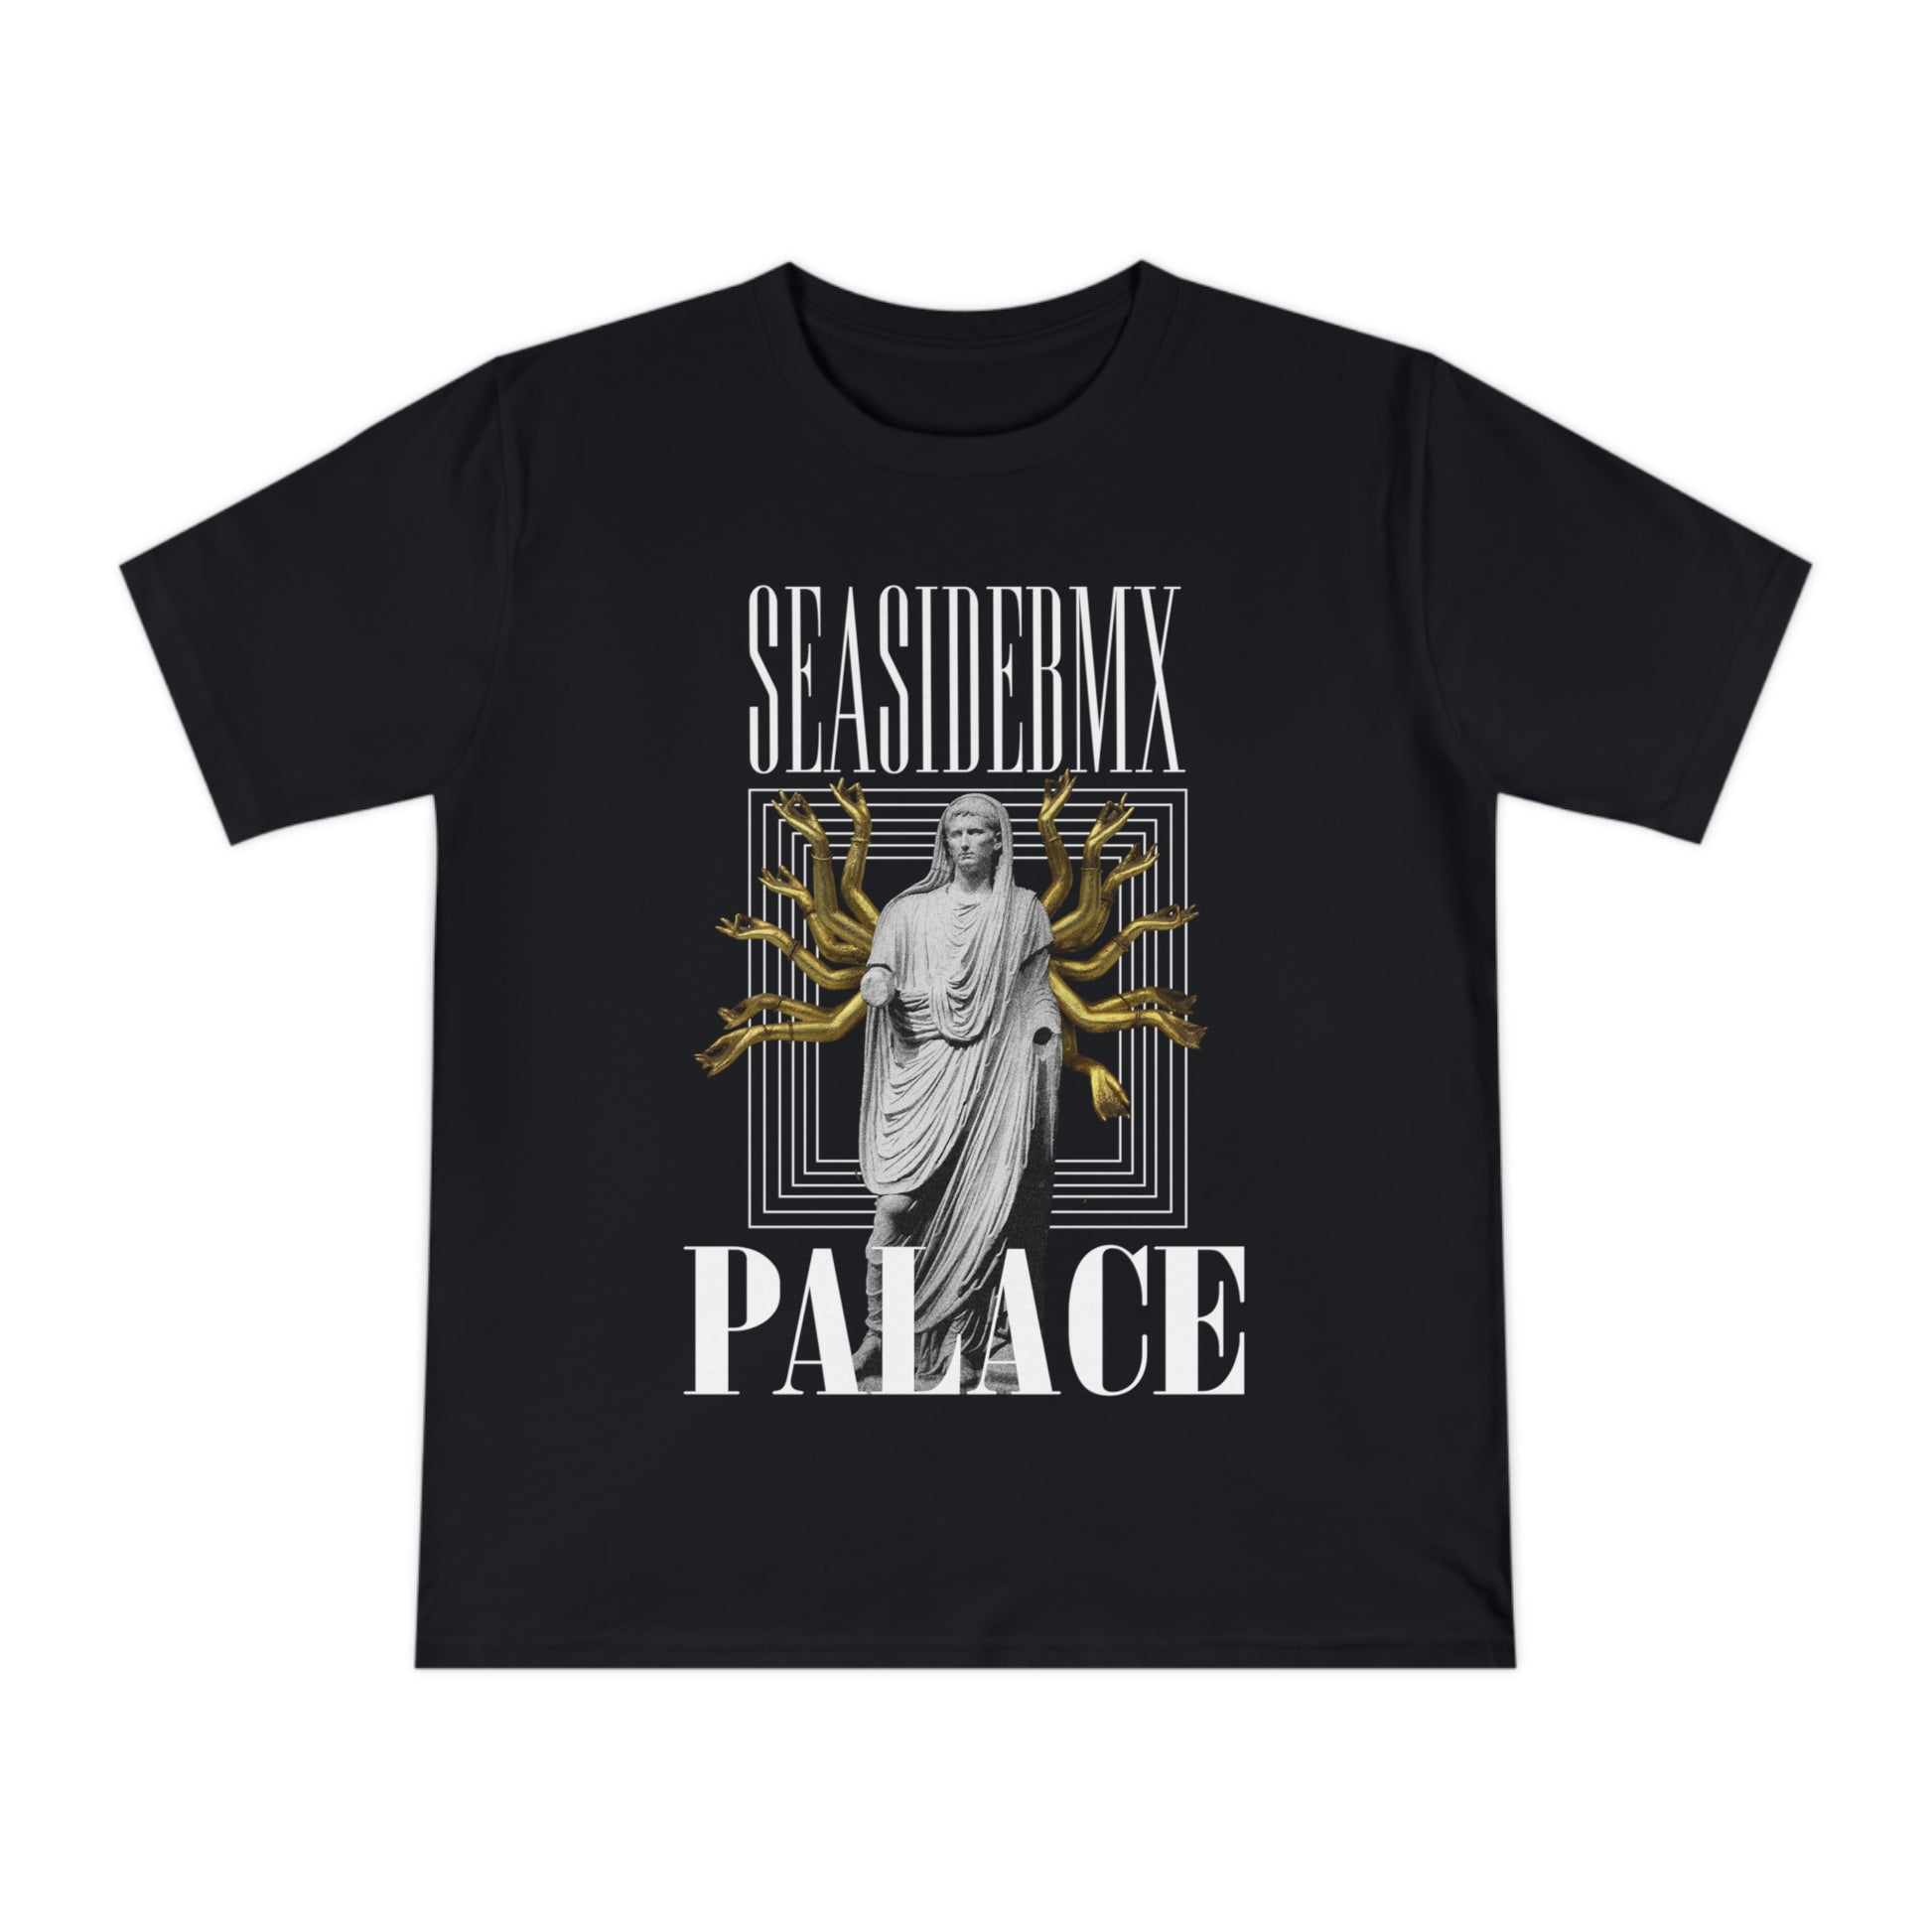 Seasidebmx Unisex T-shirt Palace - SeasideBMX - SeasideBMX